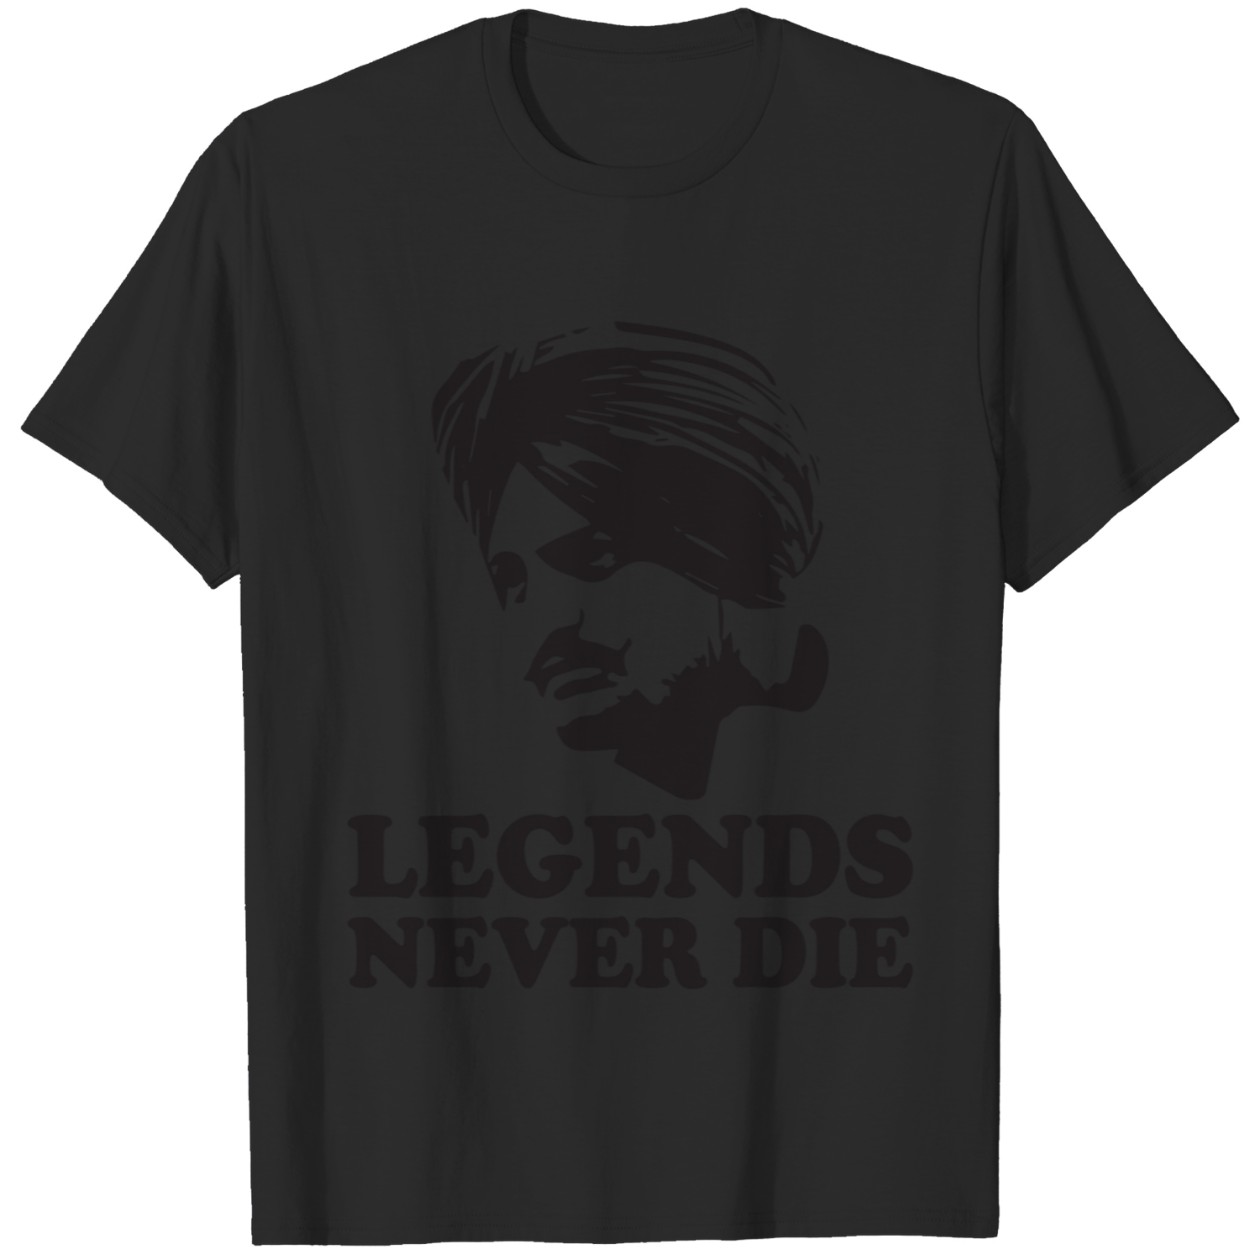 Legends Never Die T-Shirt DZT03